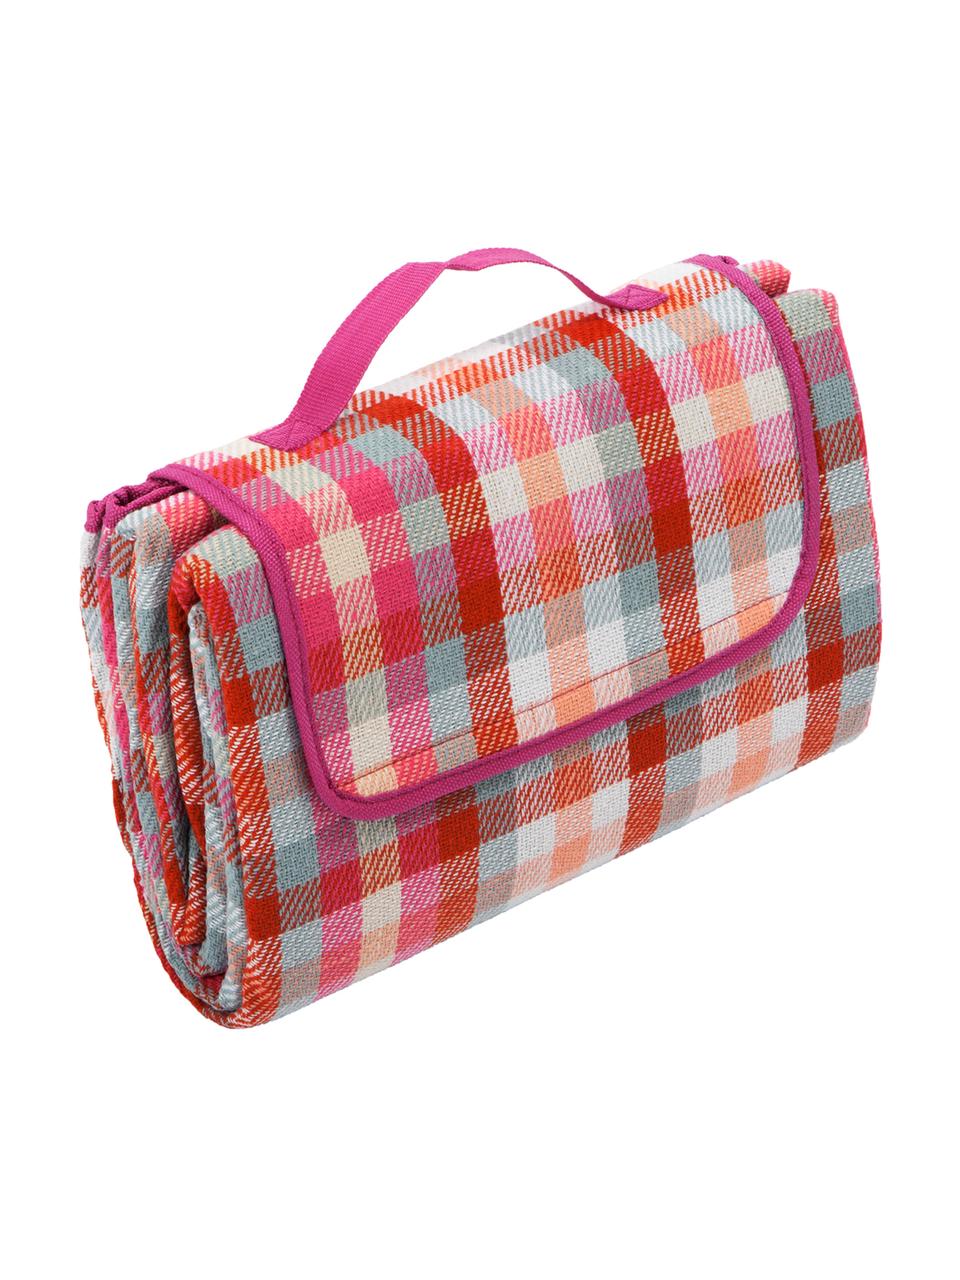 Koc piknikowy Clear, Czerwony, biały, różowy, miętowy, brzoskwiniowy, S 130 x D 170 cm